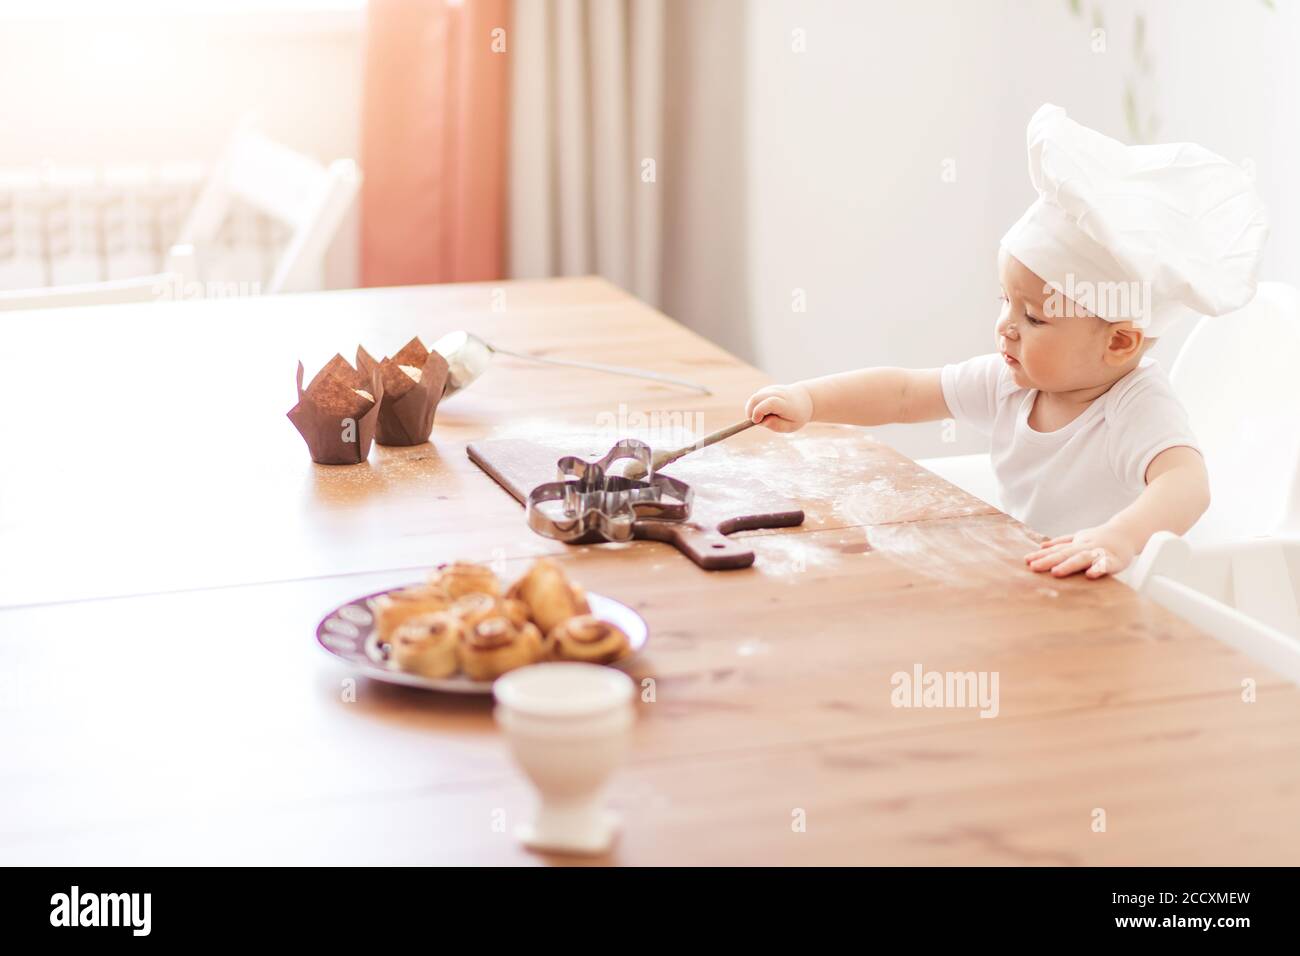 Adorable petit garçon de 1-2 ans, portant un chapeau de cuisinier jouant avec des moules à muffins, assis à une table recouverte de farine et de biscuits servis. Banque D'Images